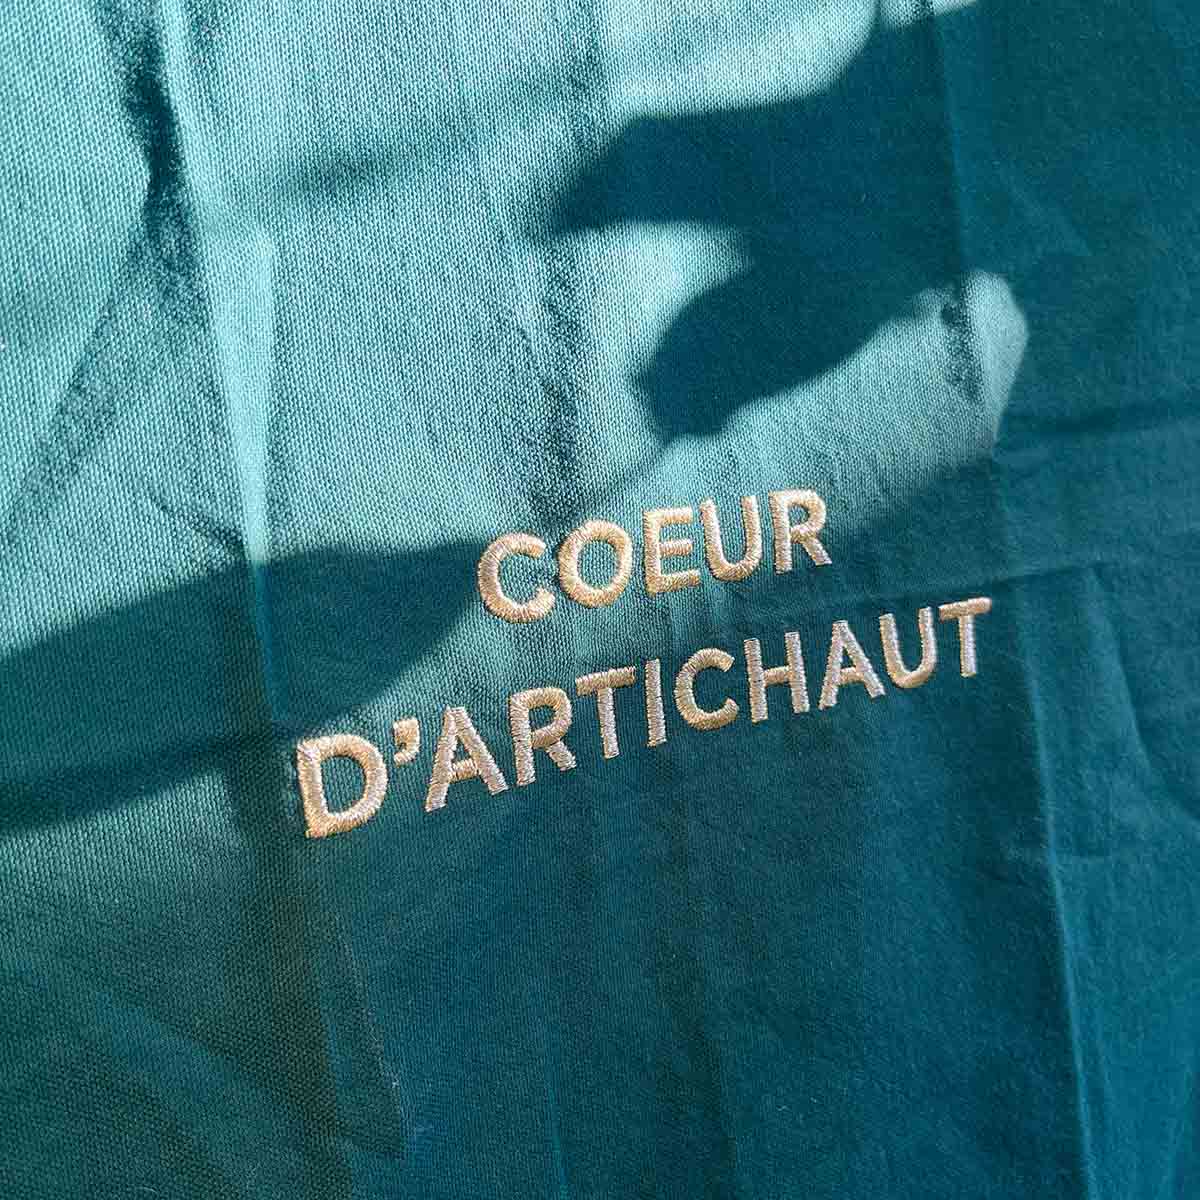 
                  
                    TORCHON COEUR D'ARTICHAUT
                  
                